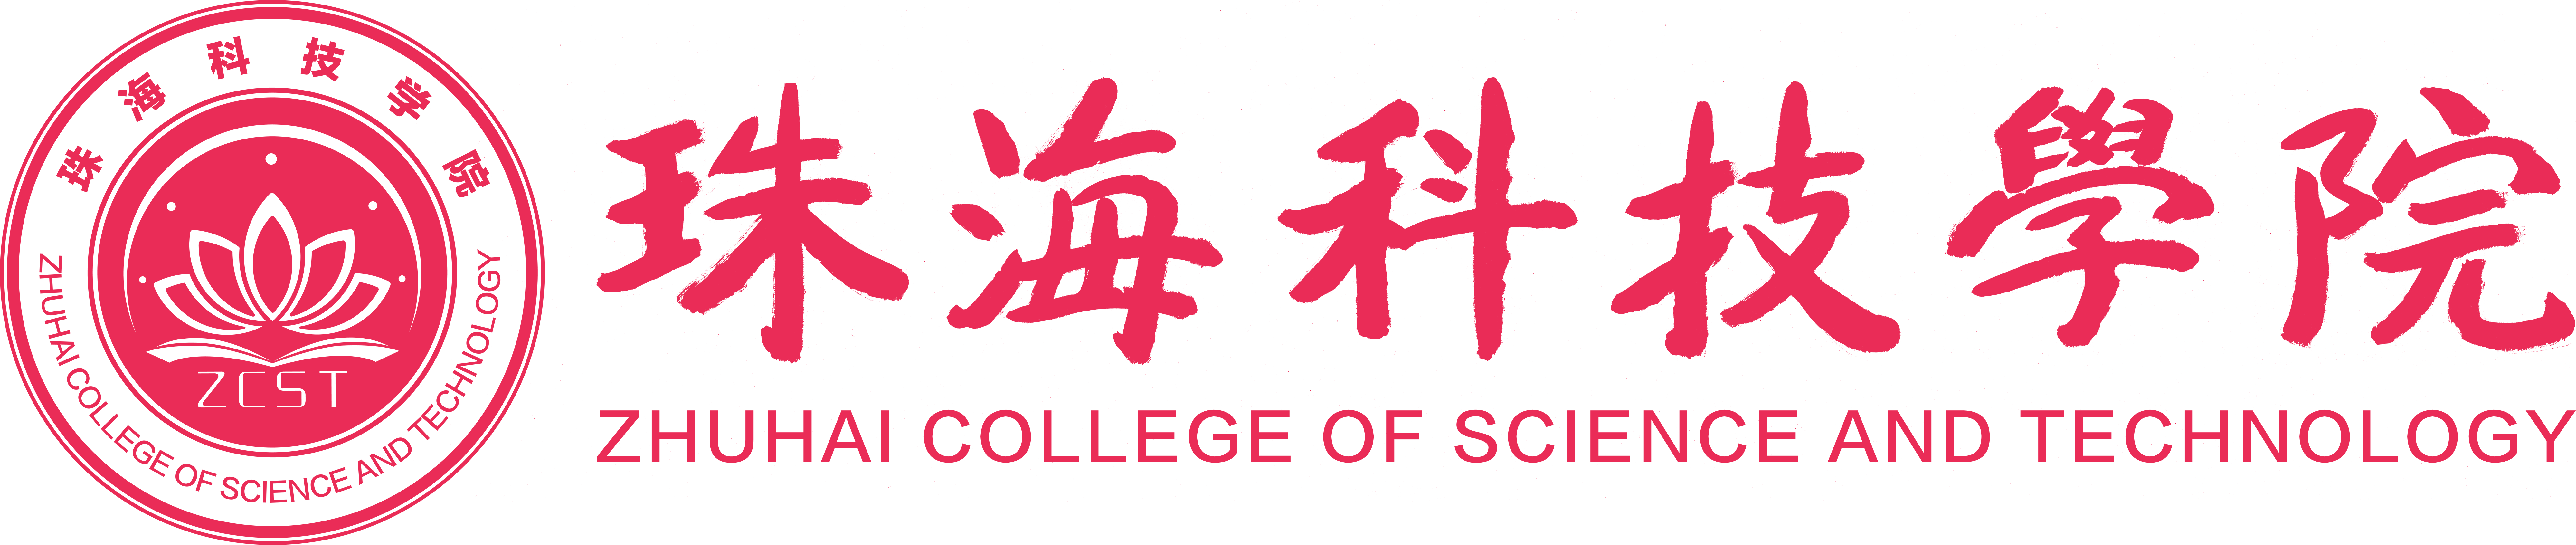 珠海科技学院logo.png